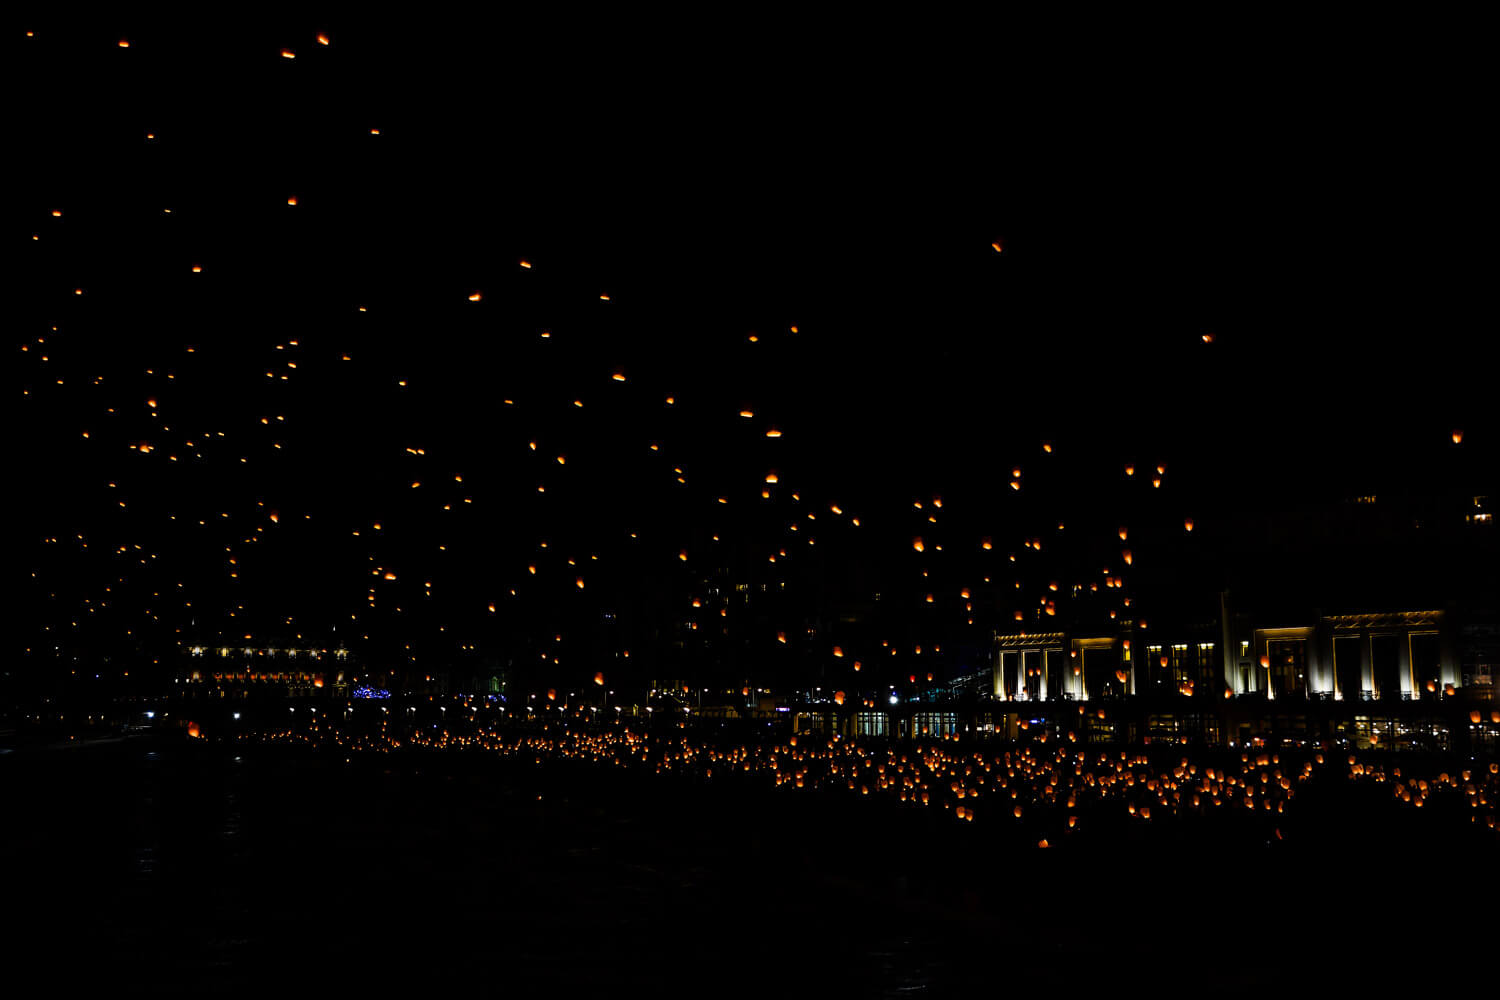 grande plage biarritz en lumieres evenement lanternes chinoises association